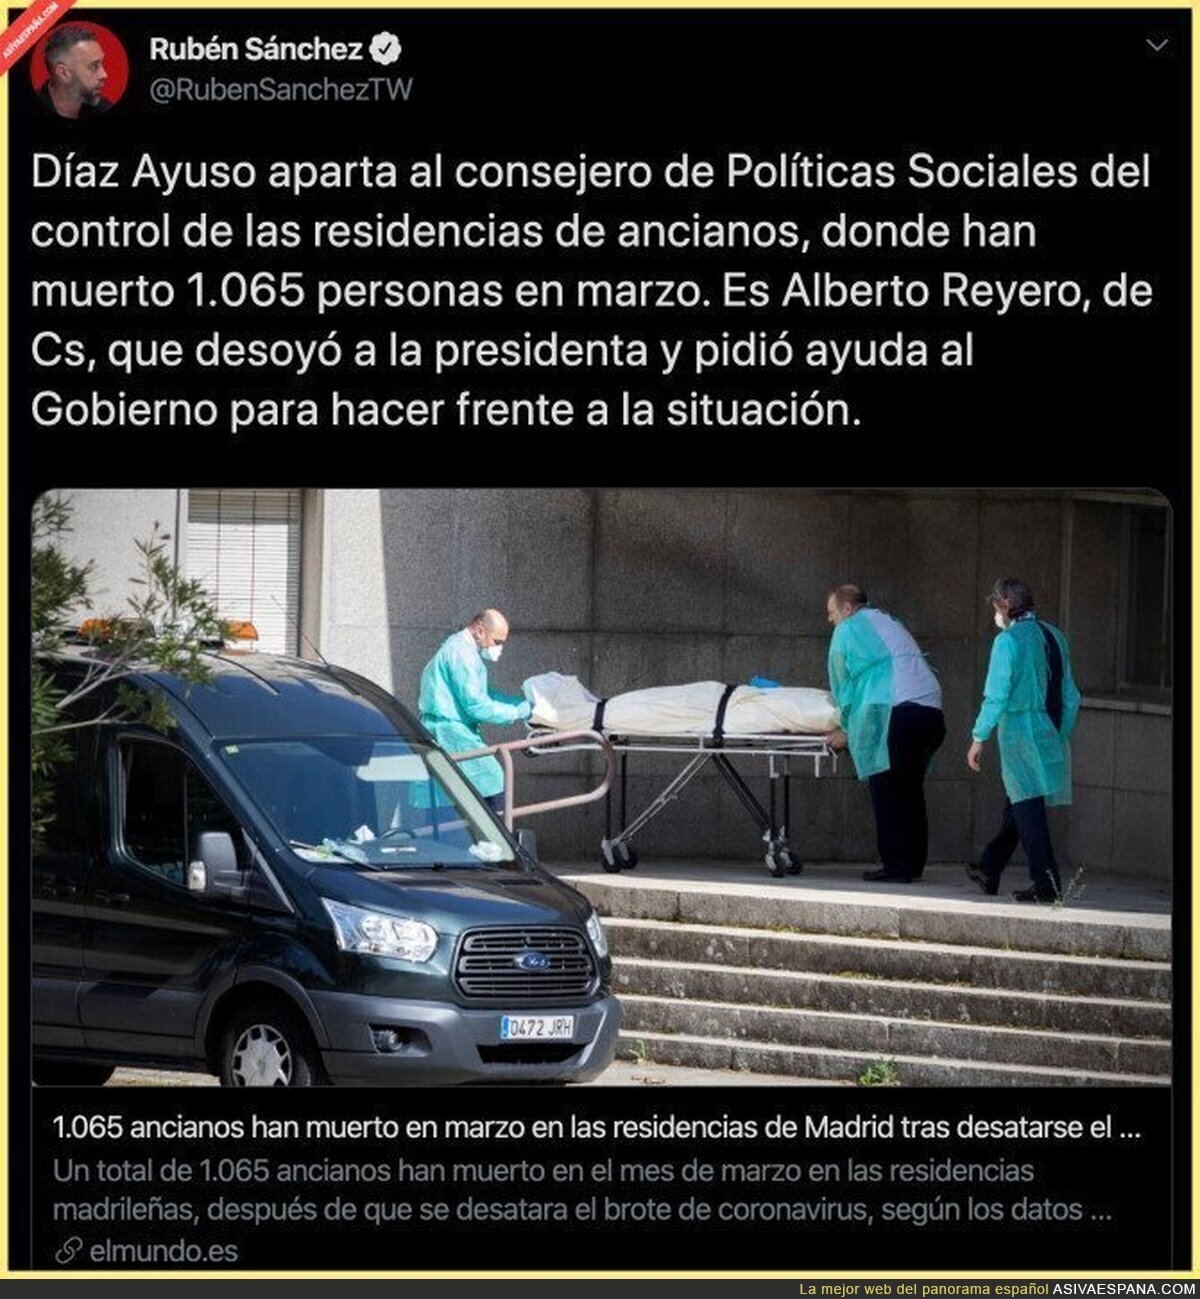 Ciudadanos estaba al mando de las residencias de Madrid y ya han sido apartados